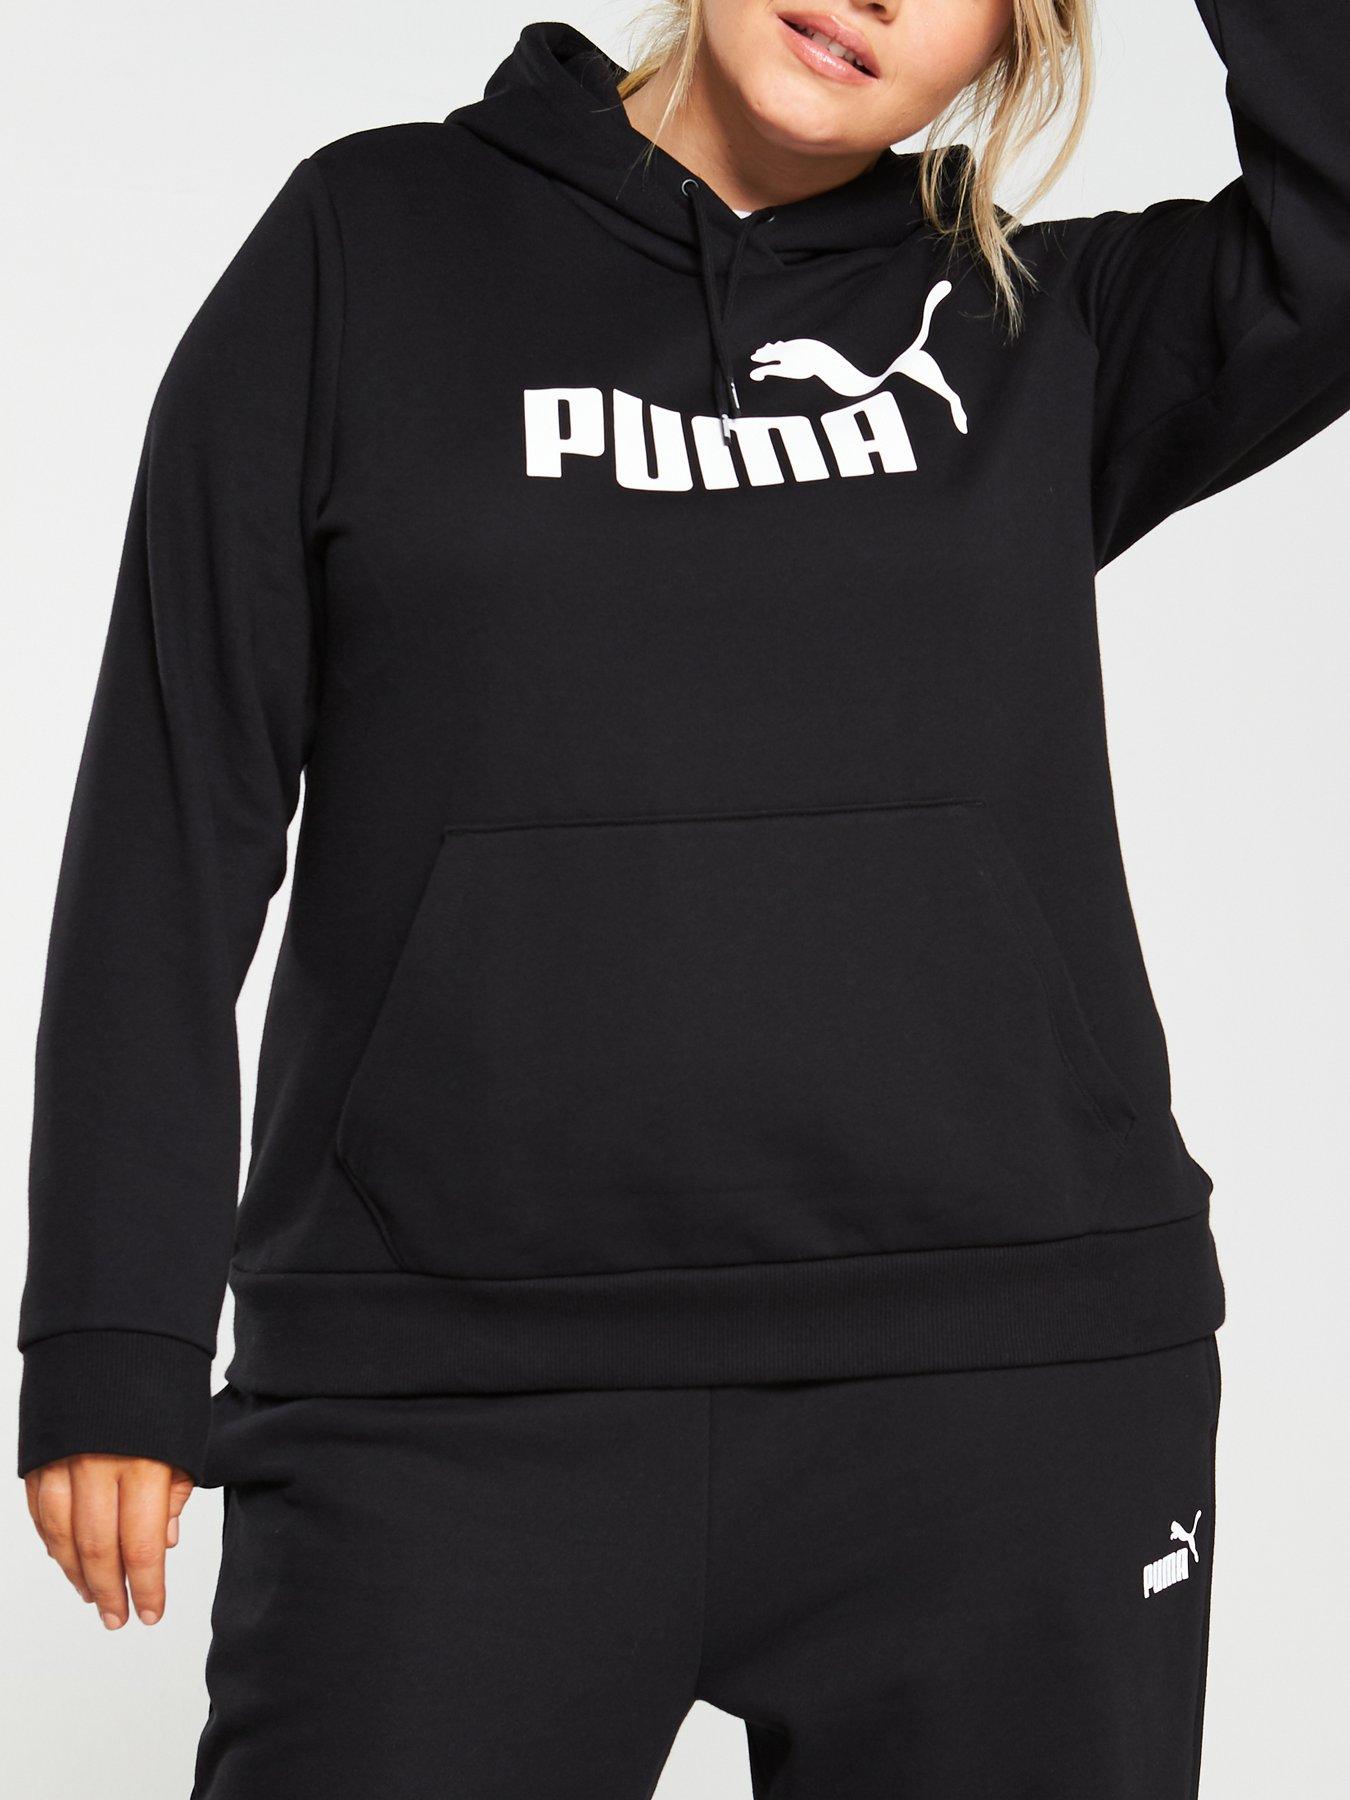 womens puma clothing